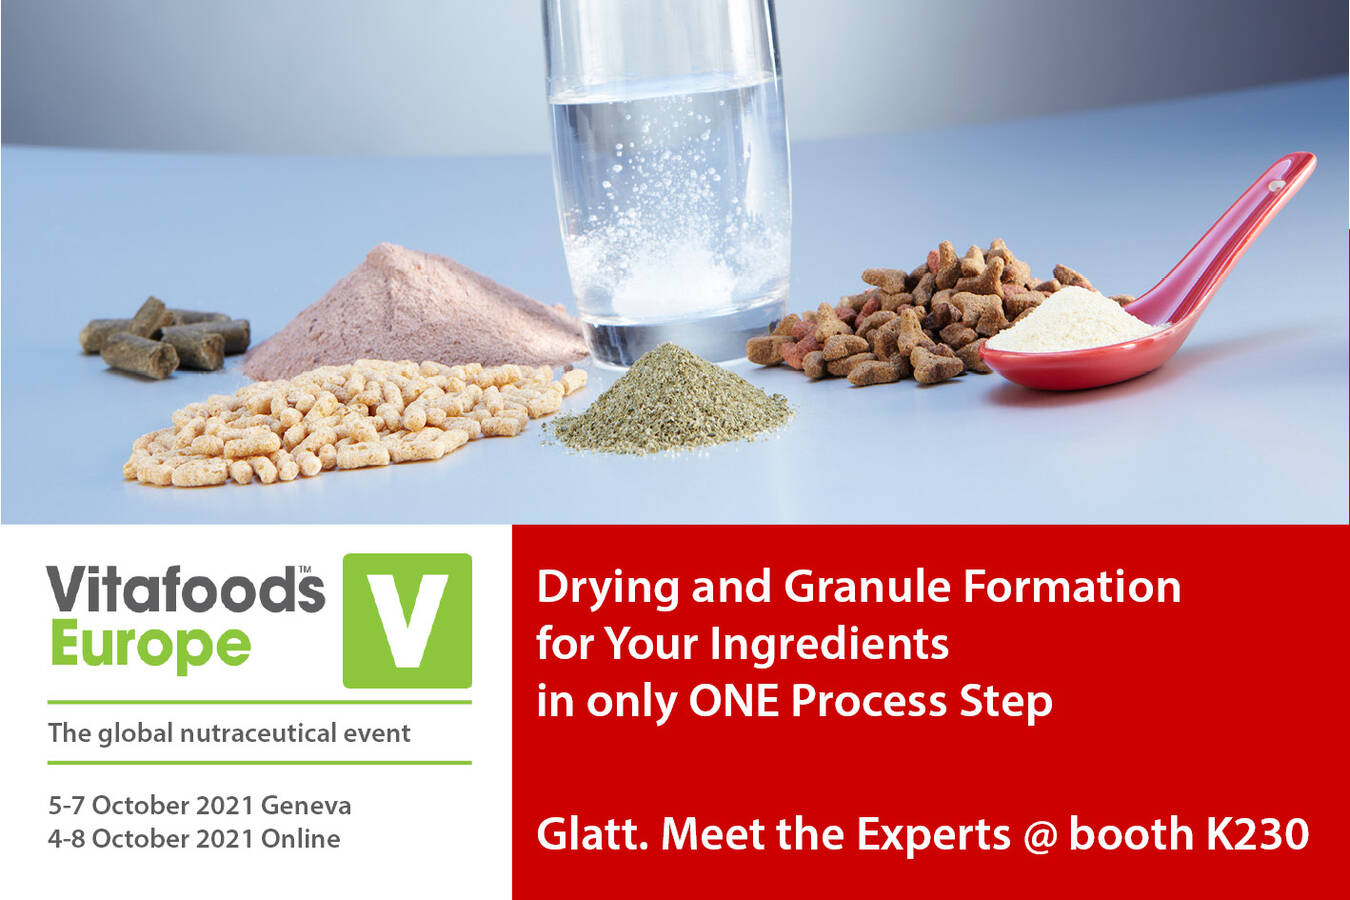 Treffen Sie die Glatt Experten auf der Vitafoods in Genf vom 5. bis 7. Oktober 2021 am Stand K230